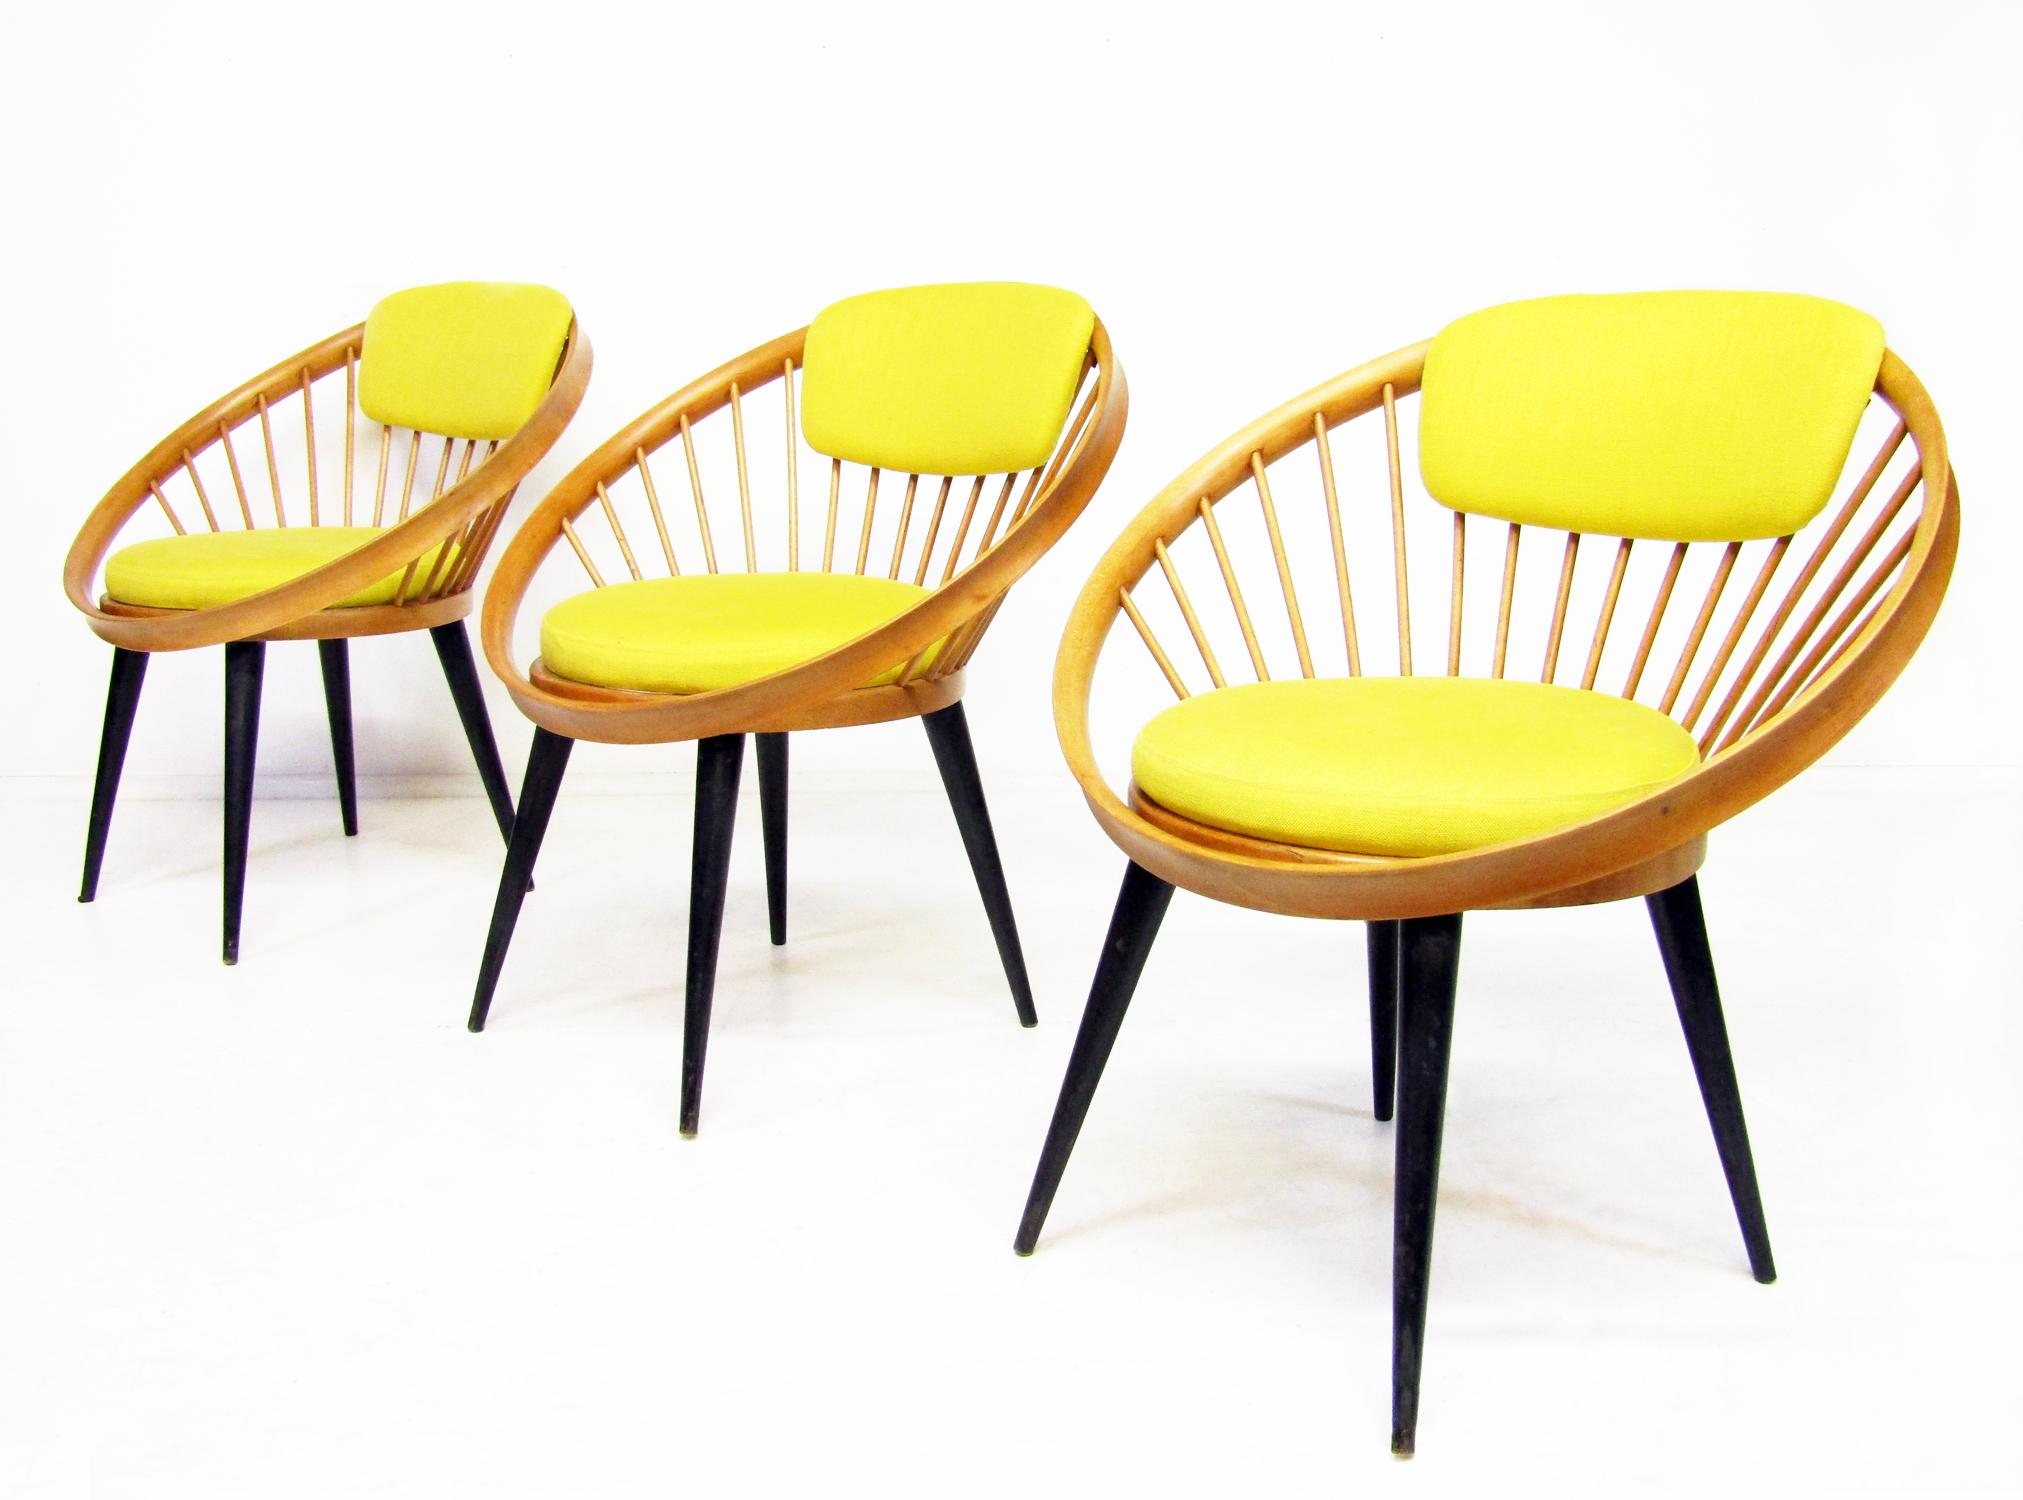 Drei schöne Laminett Circle Stühle aus den 1950er Jahren vom schwedischen Designer Yngve Ekstrom.

Mit ihren markanten Bügelgestellen auf konisch zulaufenden Beinen, dem Sitz und der Rückenlehne aus original gelbem Leinenstoff, strahlen sie den Chic